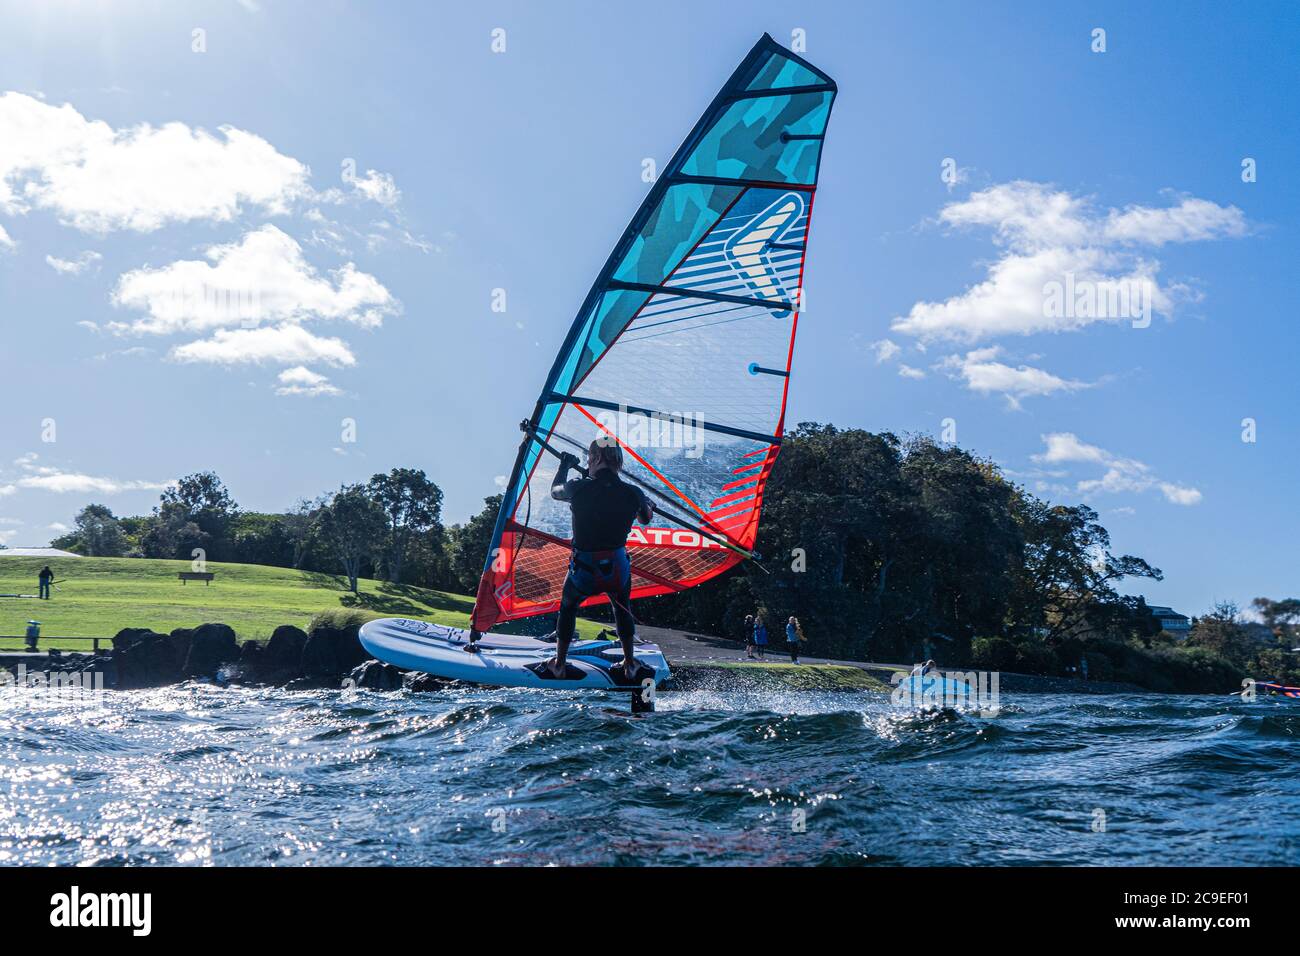 Un jeune homme en combinaison navigue sur un lac une planche à voile  hydrofoil. Fond bleu ciel Photo Stock - Alamy